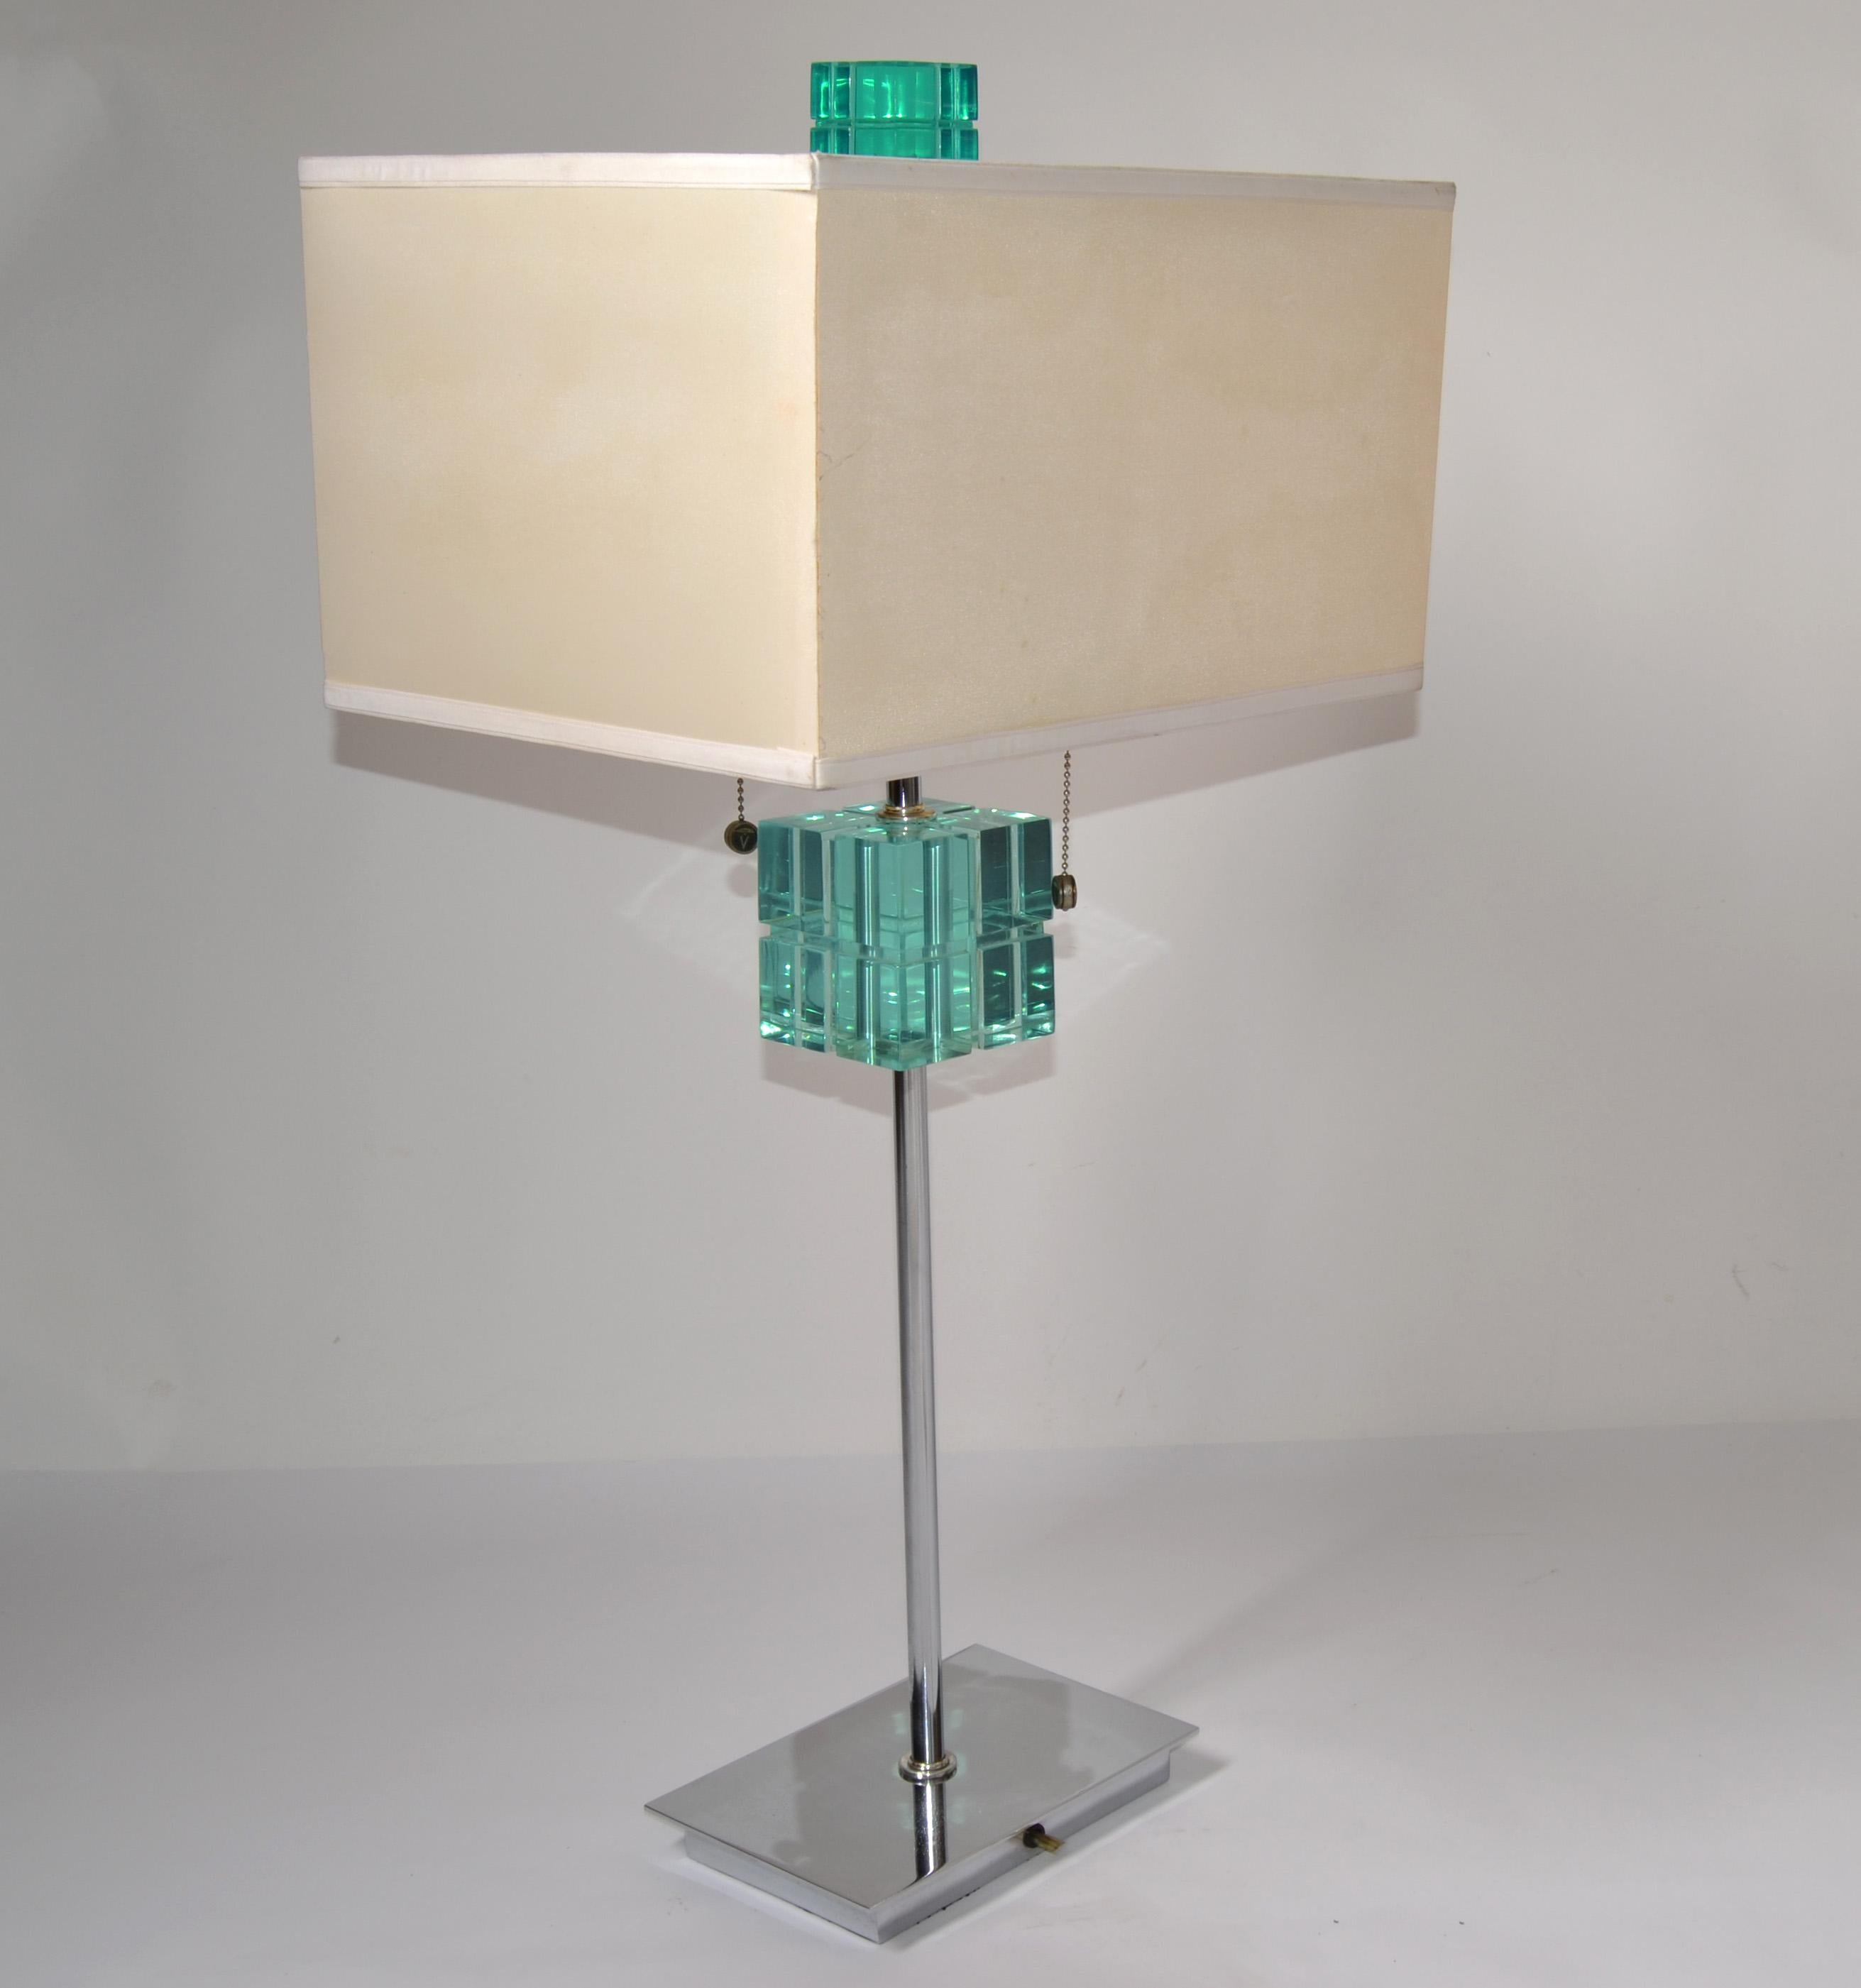 Lampe de table Hivo Van Teal Mid-Century Modern transparente en Lucite et Chrome vert émeraude avec abat-jour rectangle en tissu beige.
Quincaillerie en nickel avec prises de courant et cordons de tirage en double S. Câblé aux États-Unis, listé UL